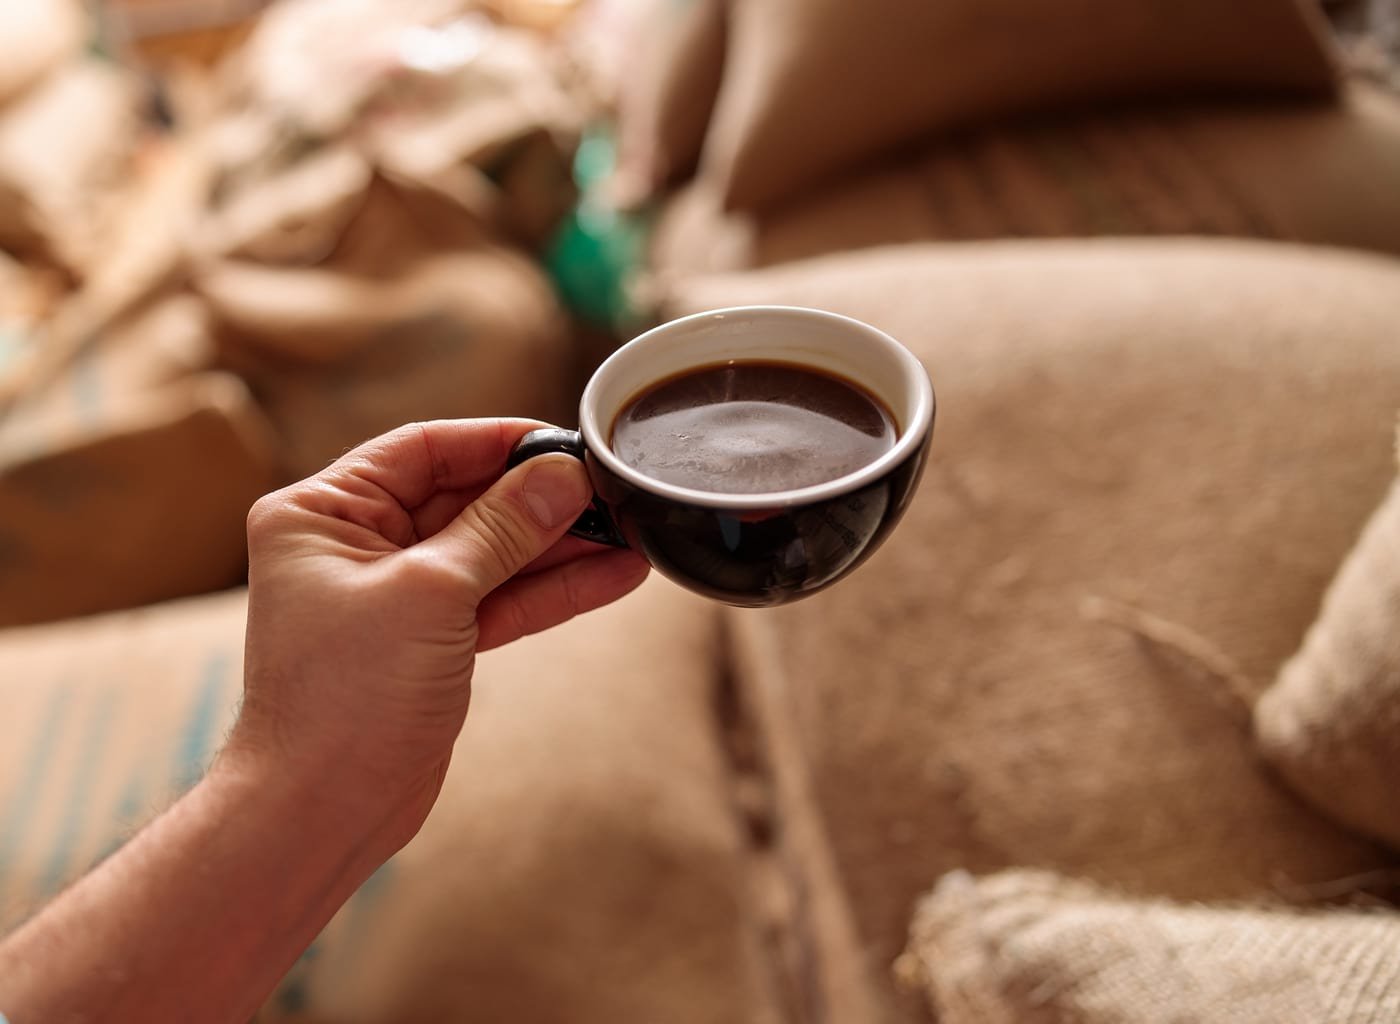  De ce să bei zilnic cafea şi ceai după vârsta de 50 de ani